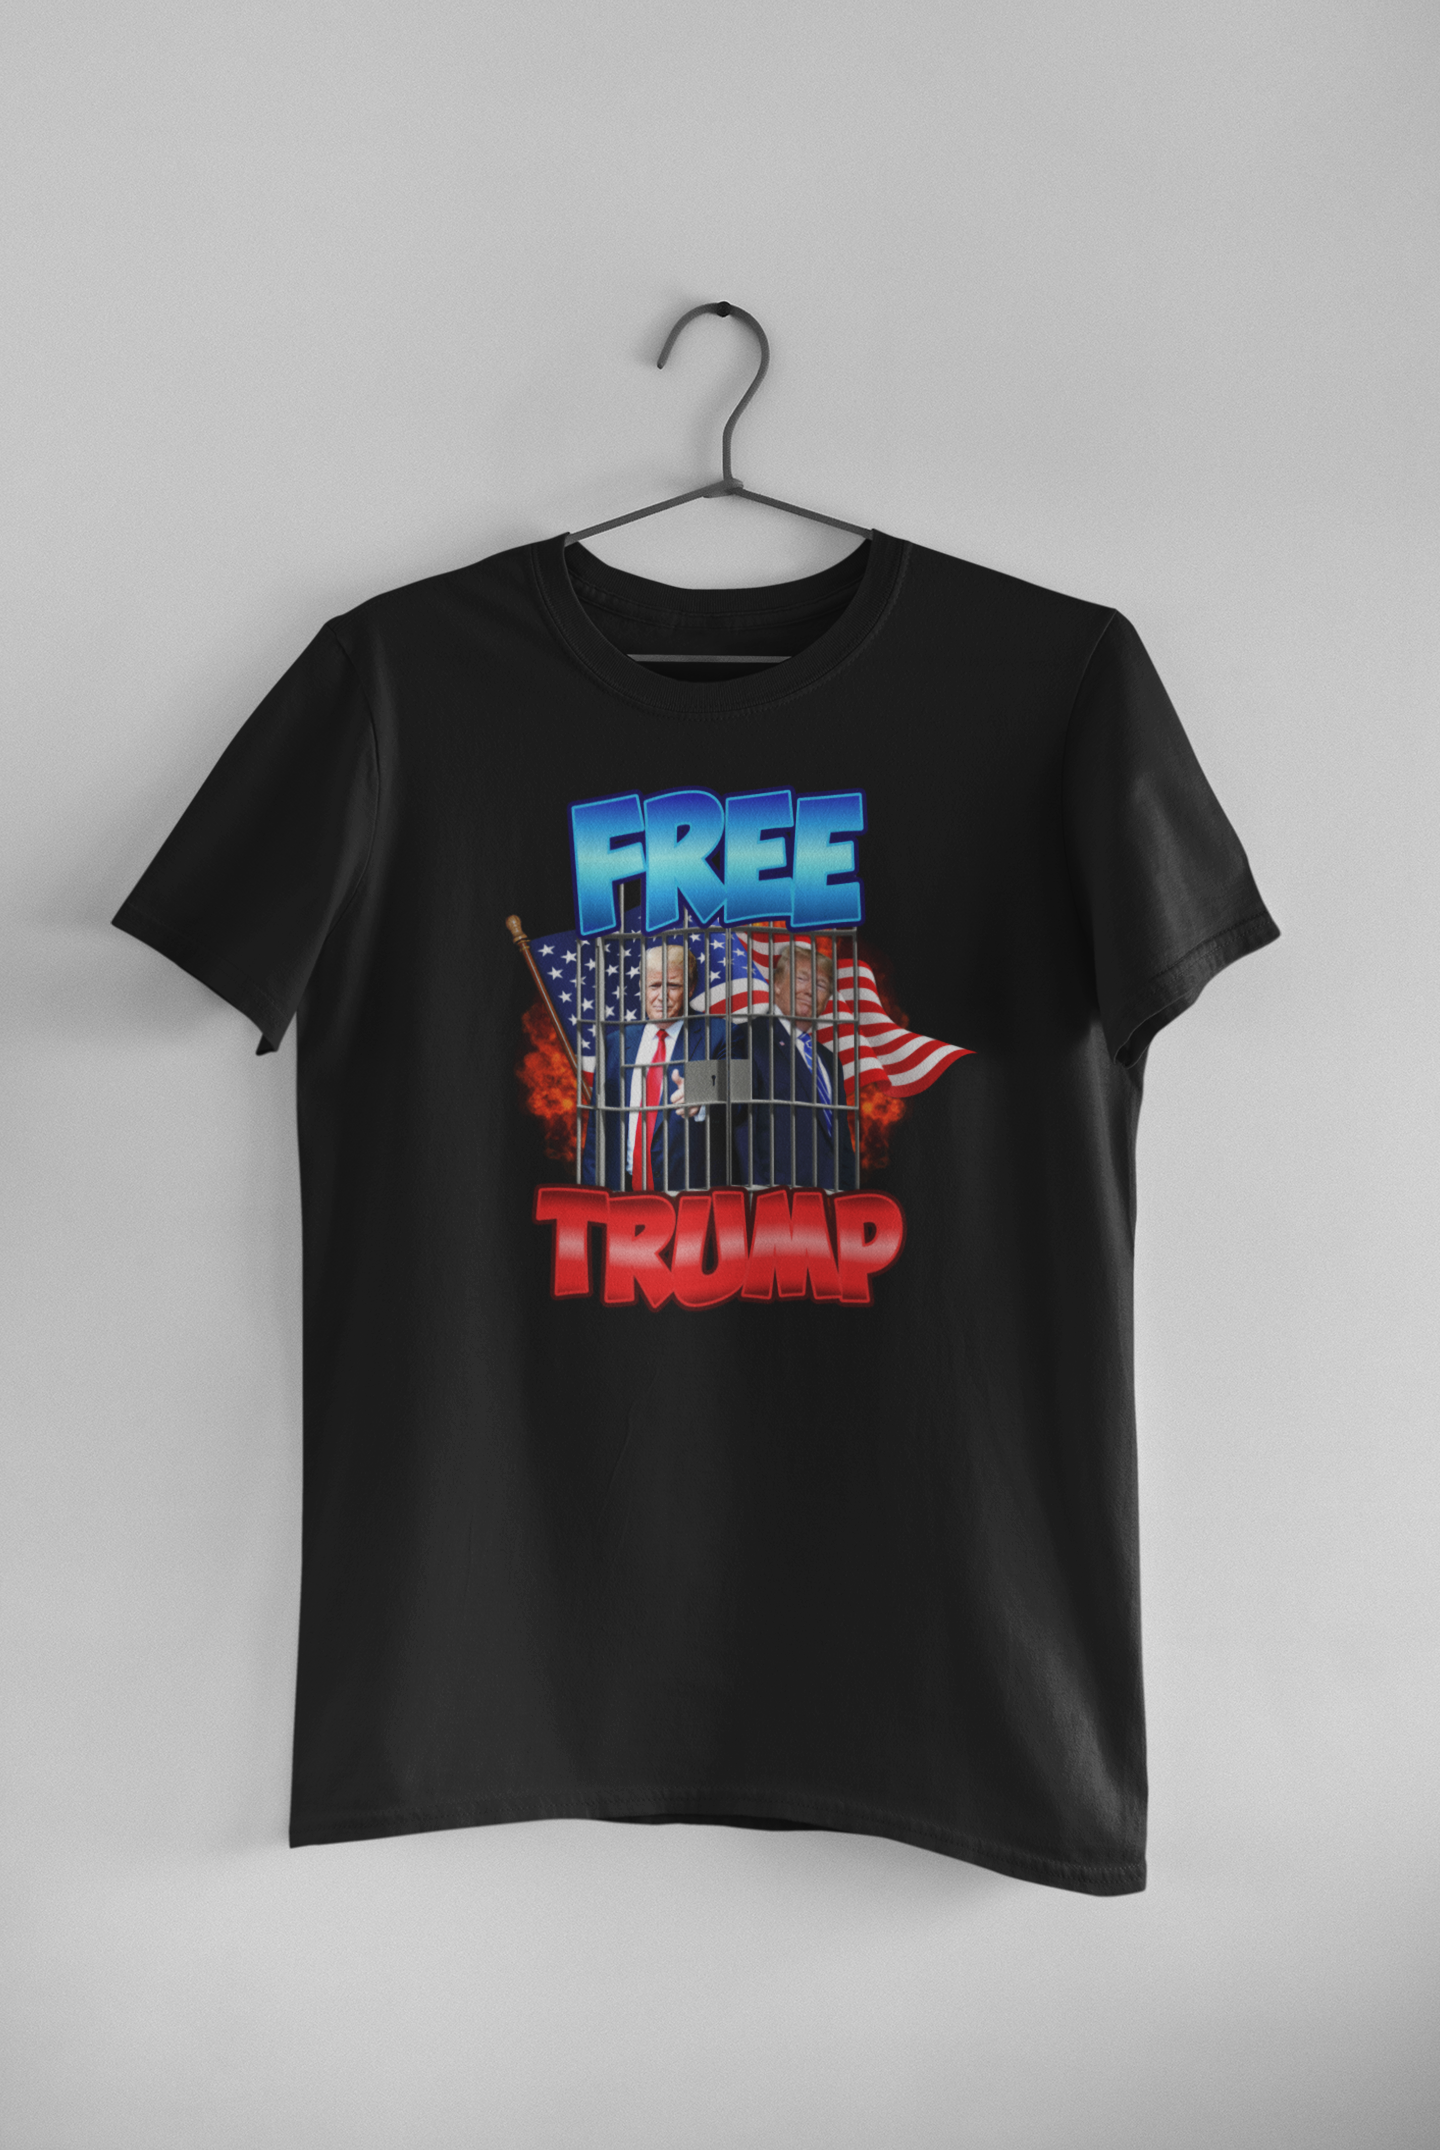 Free Trump Tee